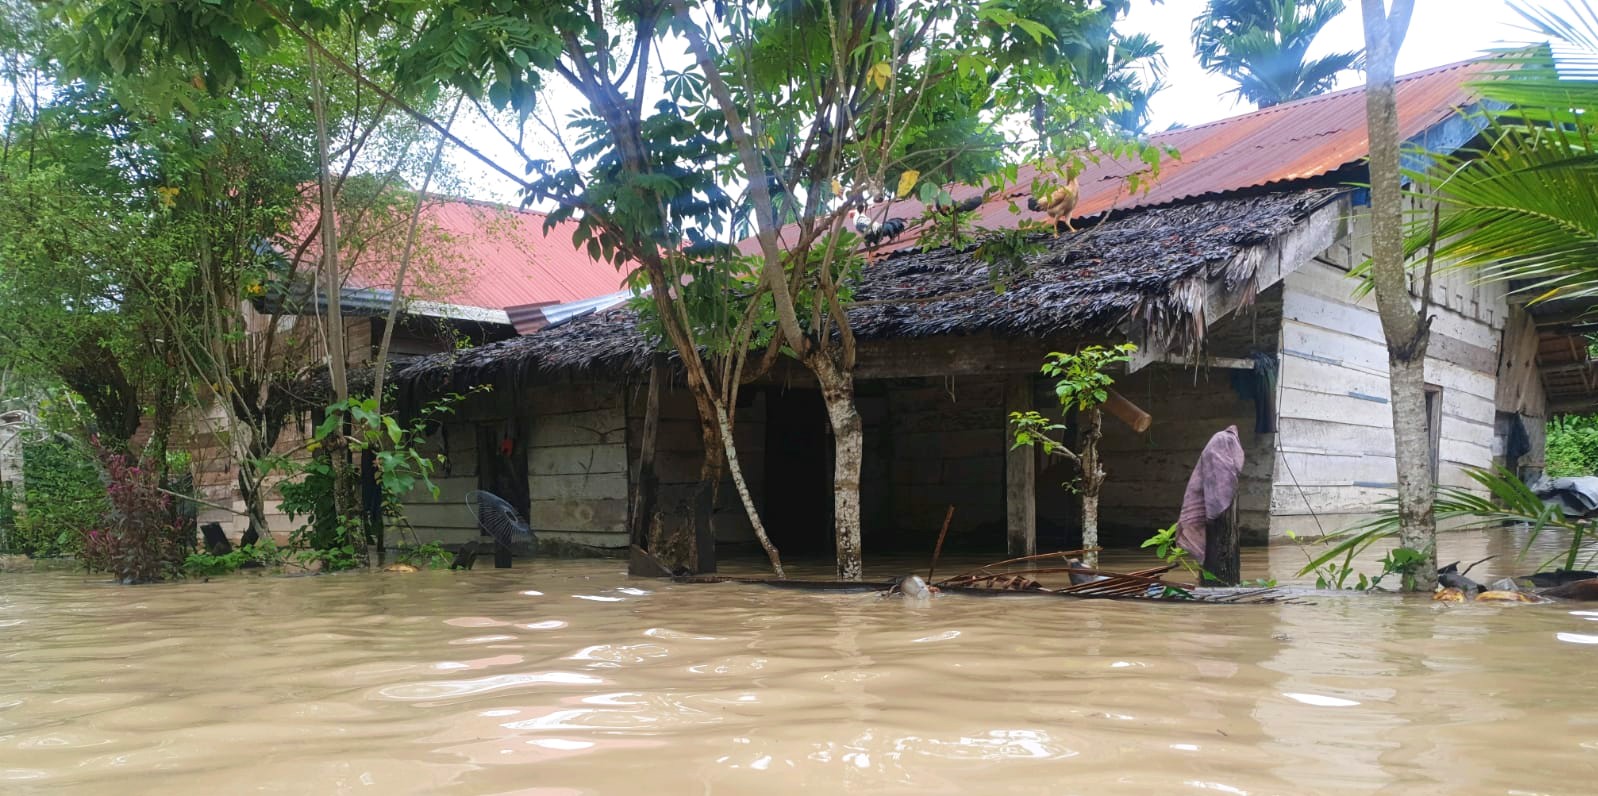 Badan Penanggulangan Bencana Daerah mencatat 34 ribu orang mengungsi dan 1.111 rumah terendam banjir. Banjir yang terjadi sejak Kamis (30/12/2021) itu belum surut hingga Rabu (5/1/2022). (Foto: Dok. BPBA)